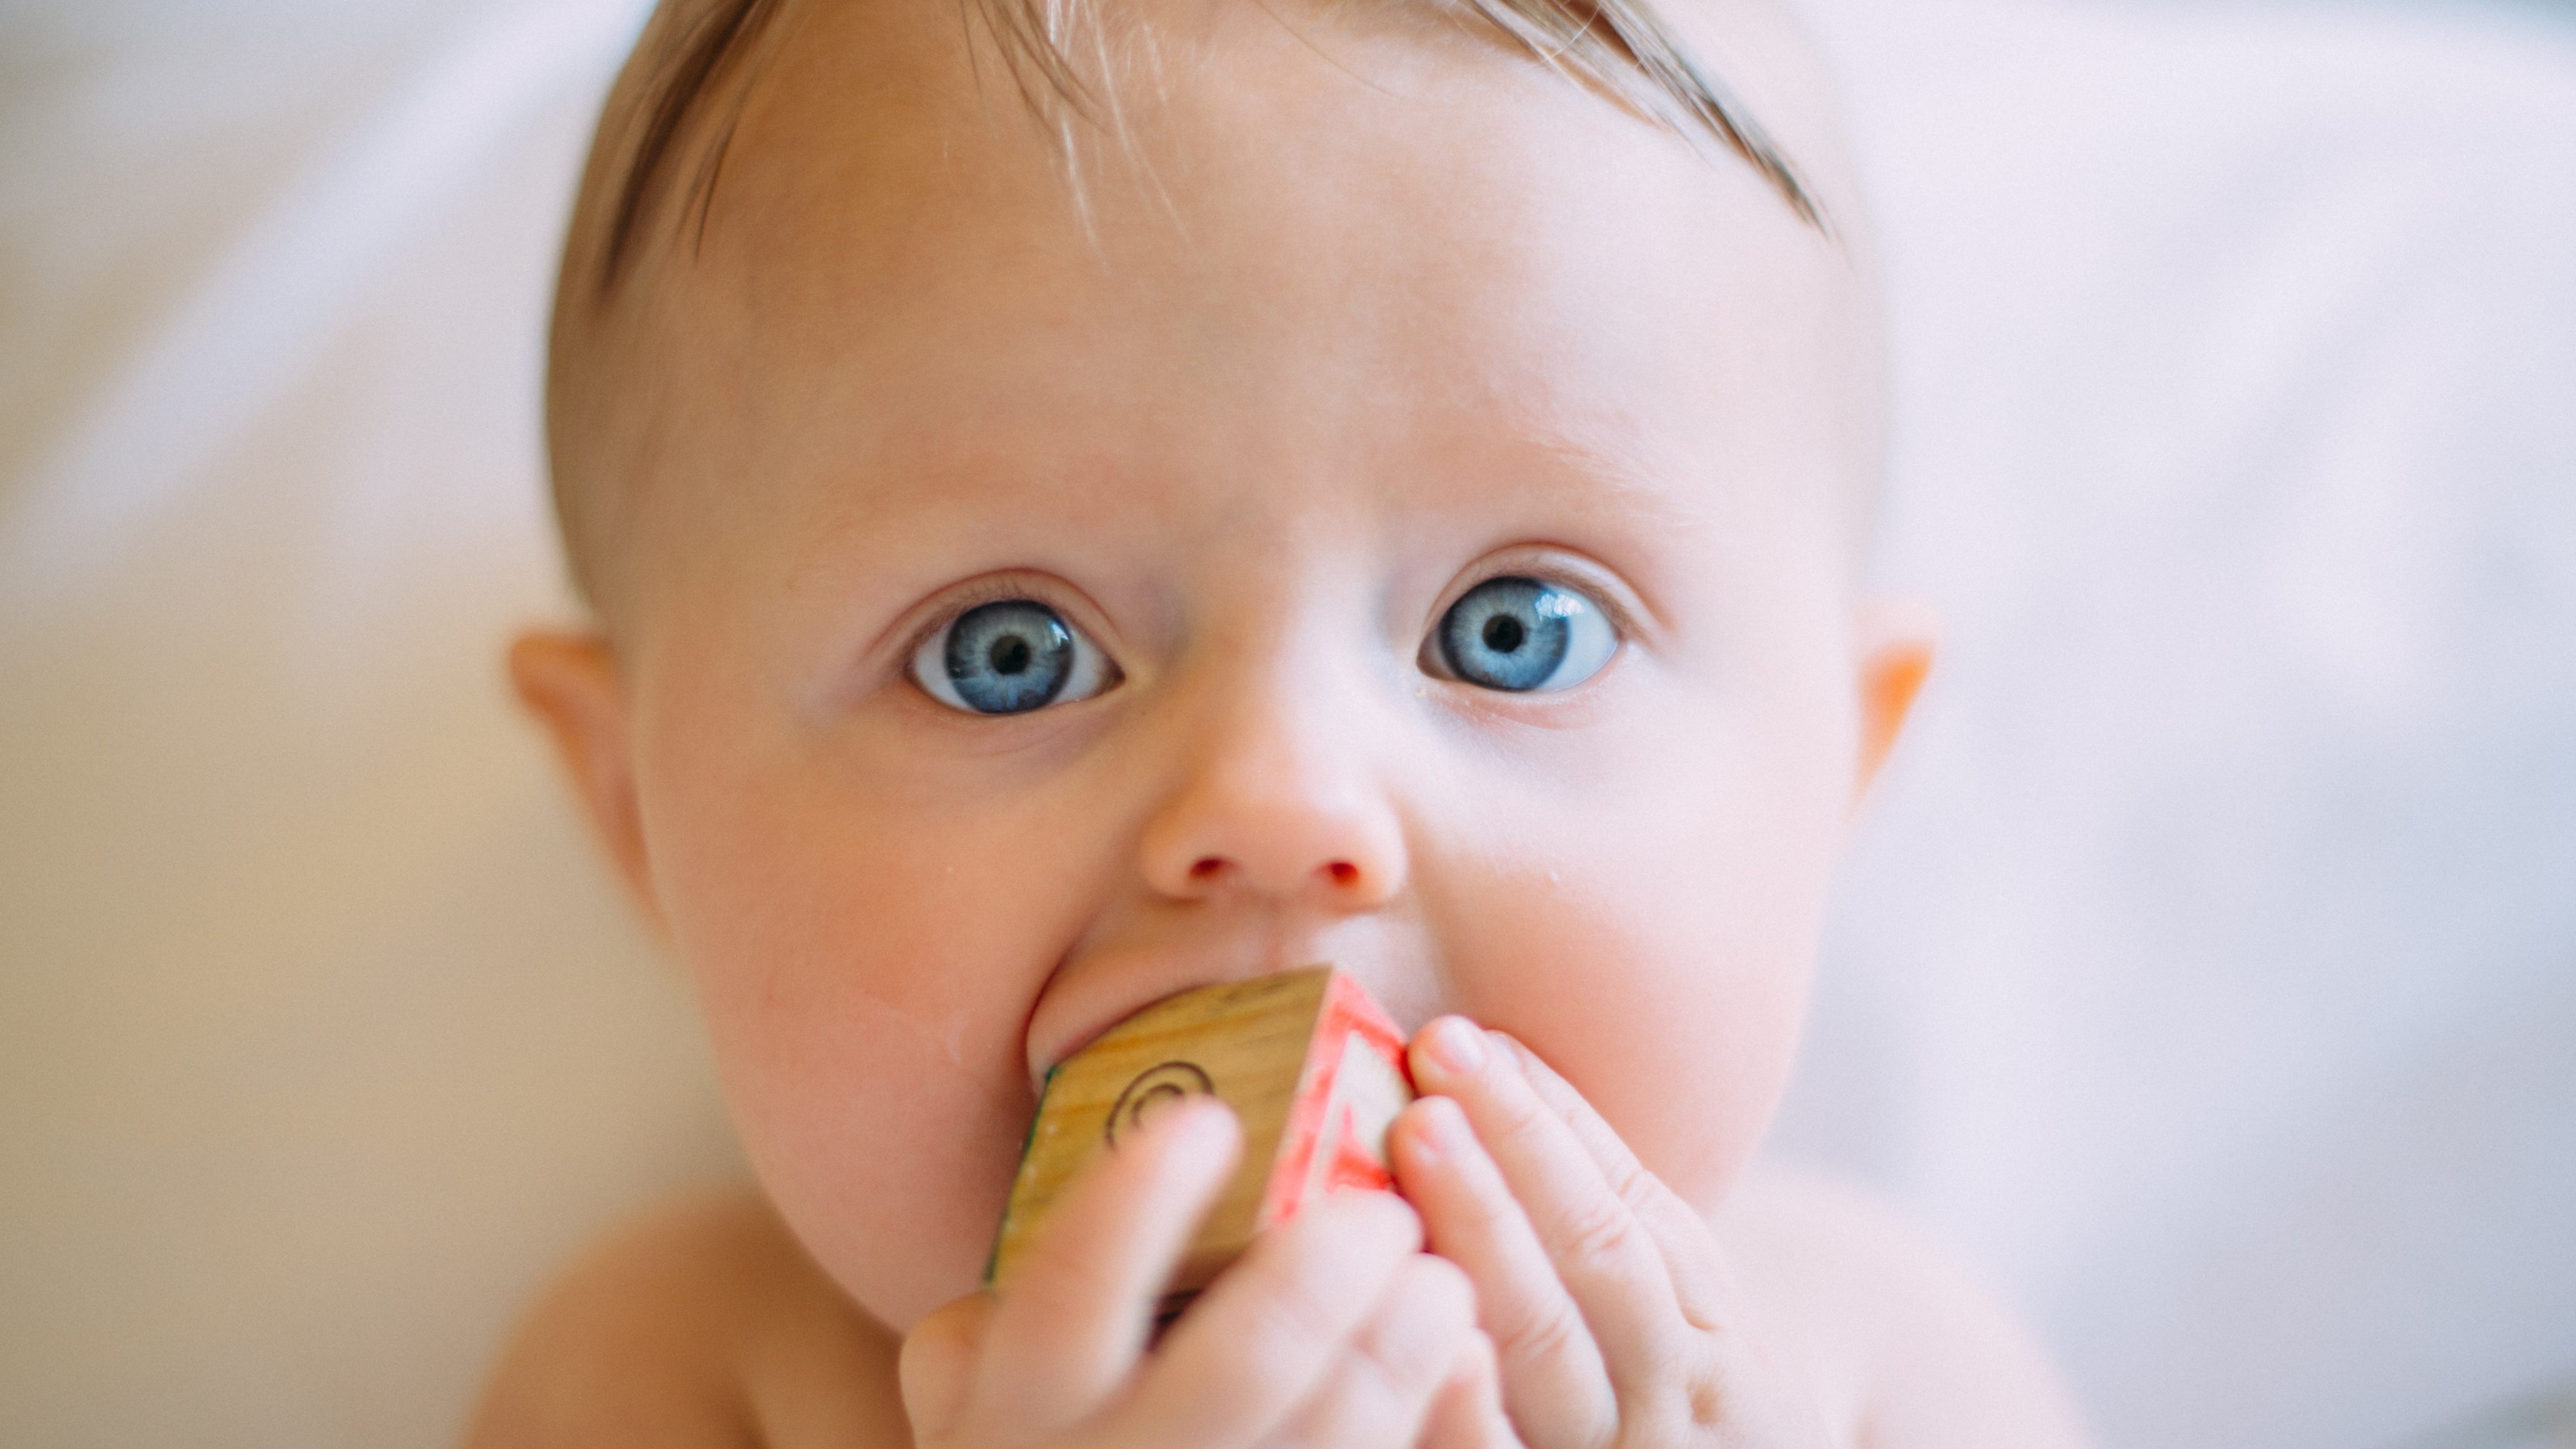 赤ちゃんの体内には“成人の10倍以上”のマイクロプラスチックが侵入している | 新生児の胎便からも検出